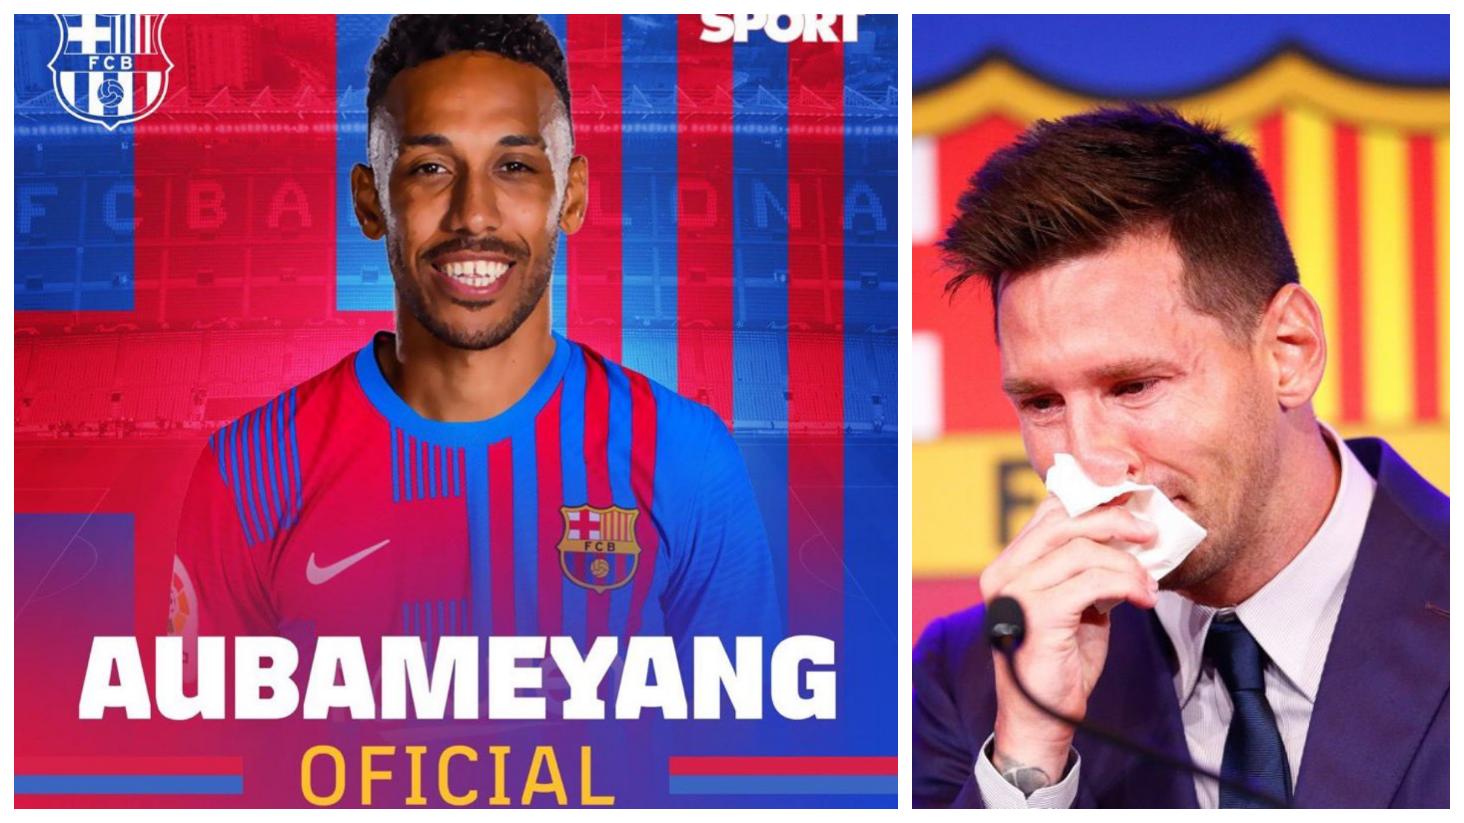 «Il a changé le foot pour nous autres», Aubameyang désigne le GOAT et écarte Messi